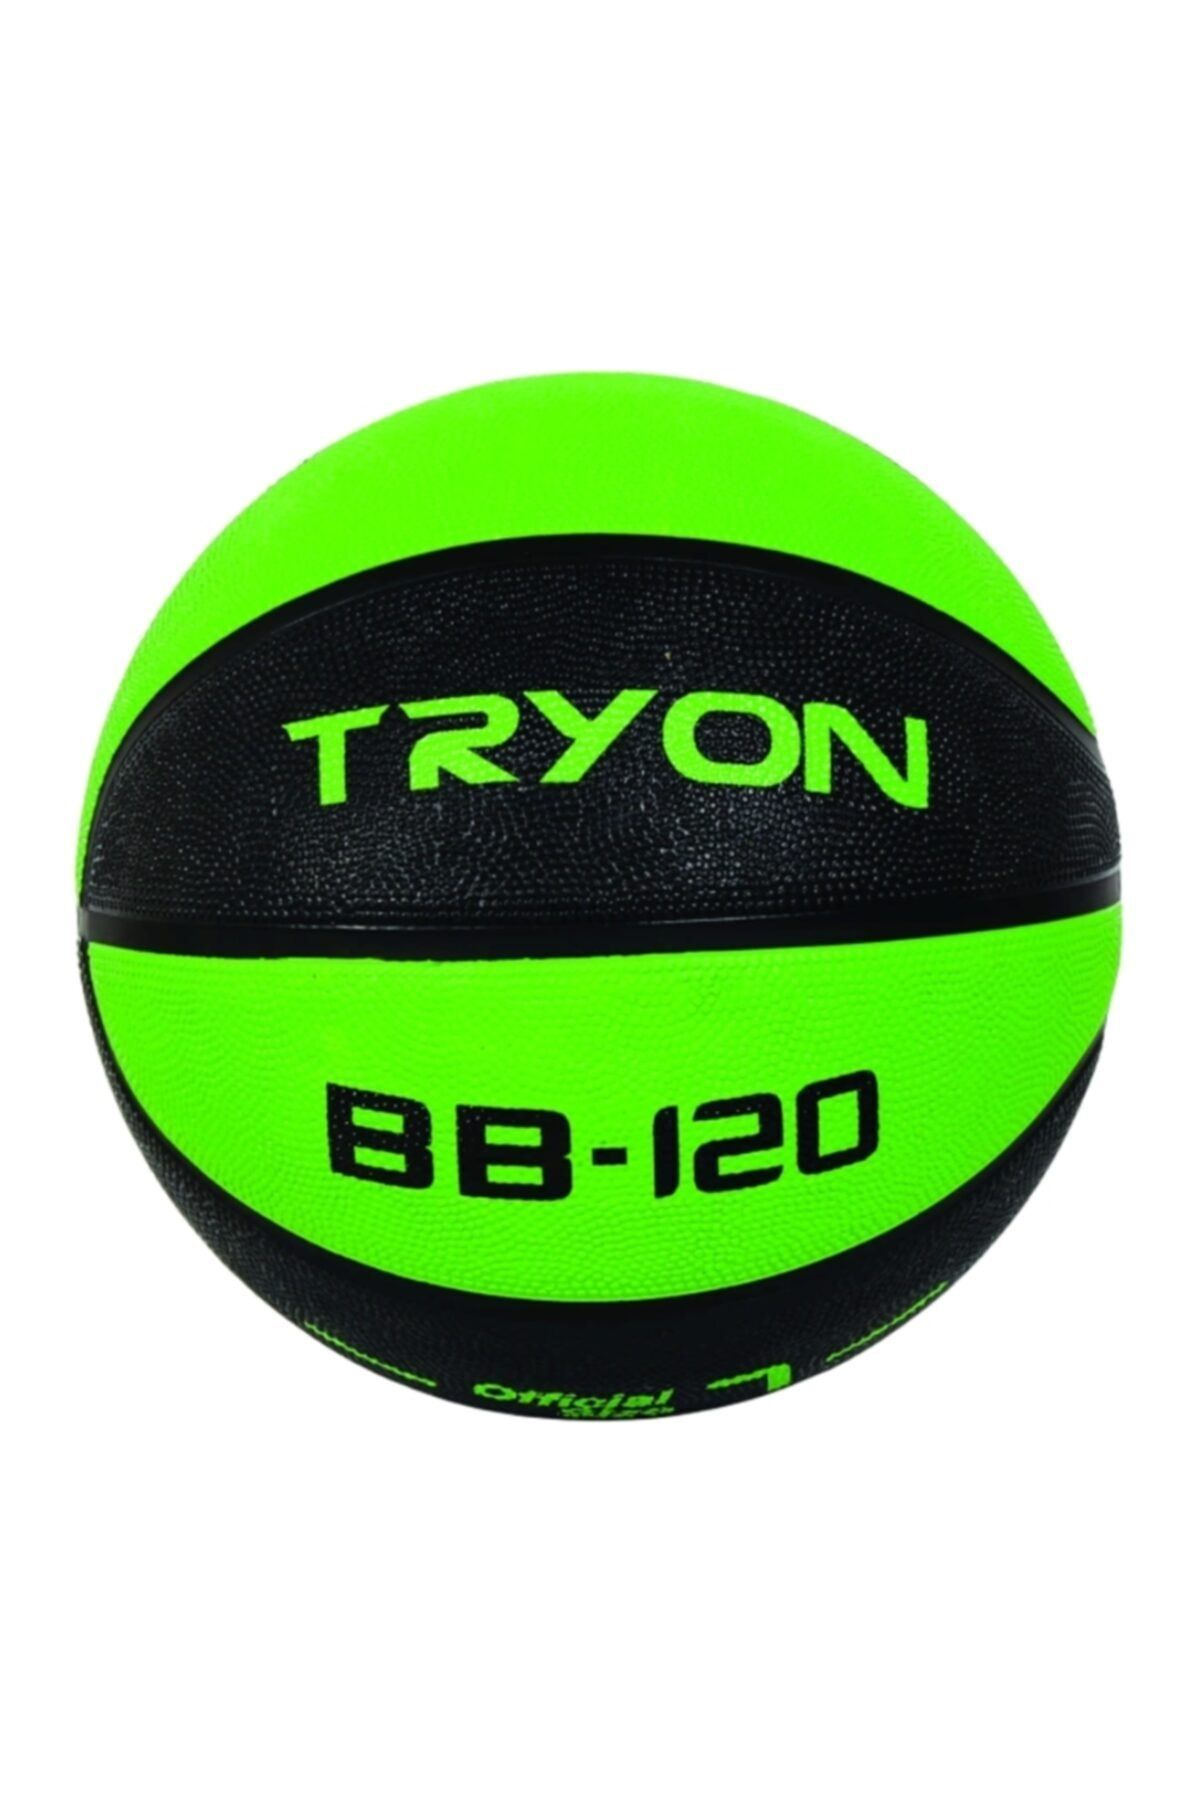 TRYON Bb-120 7 No Basketbol Topu